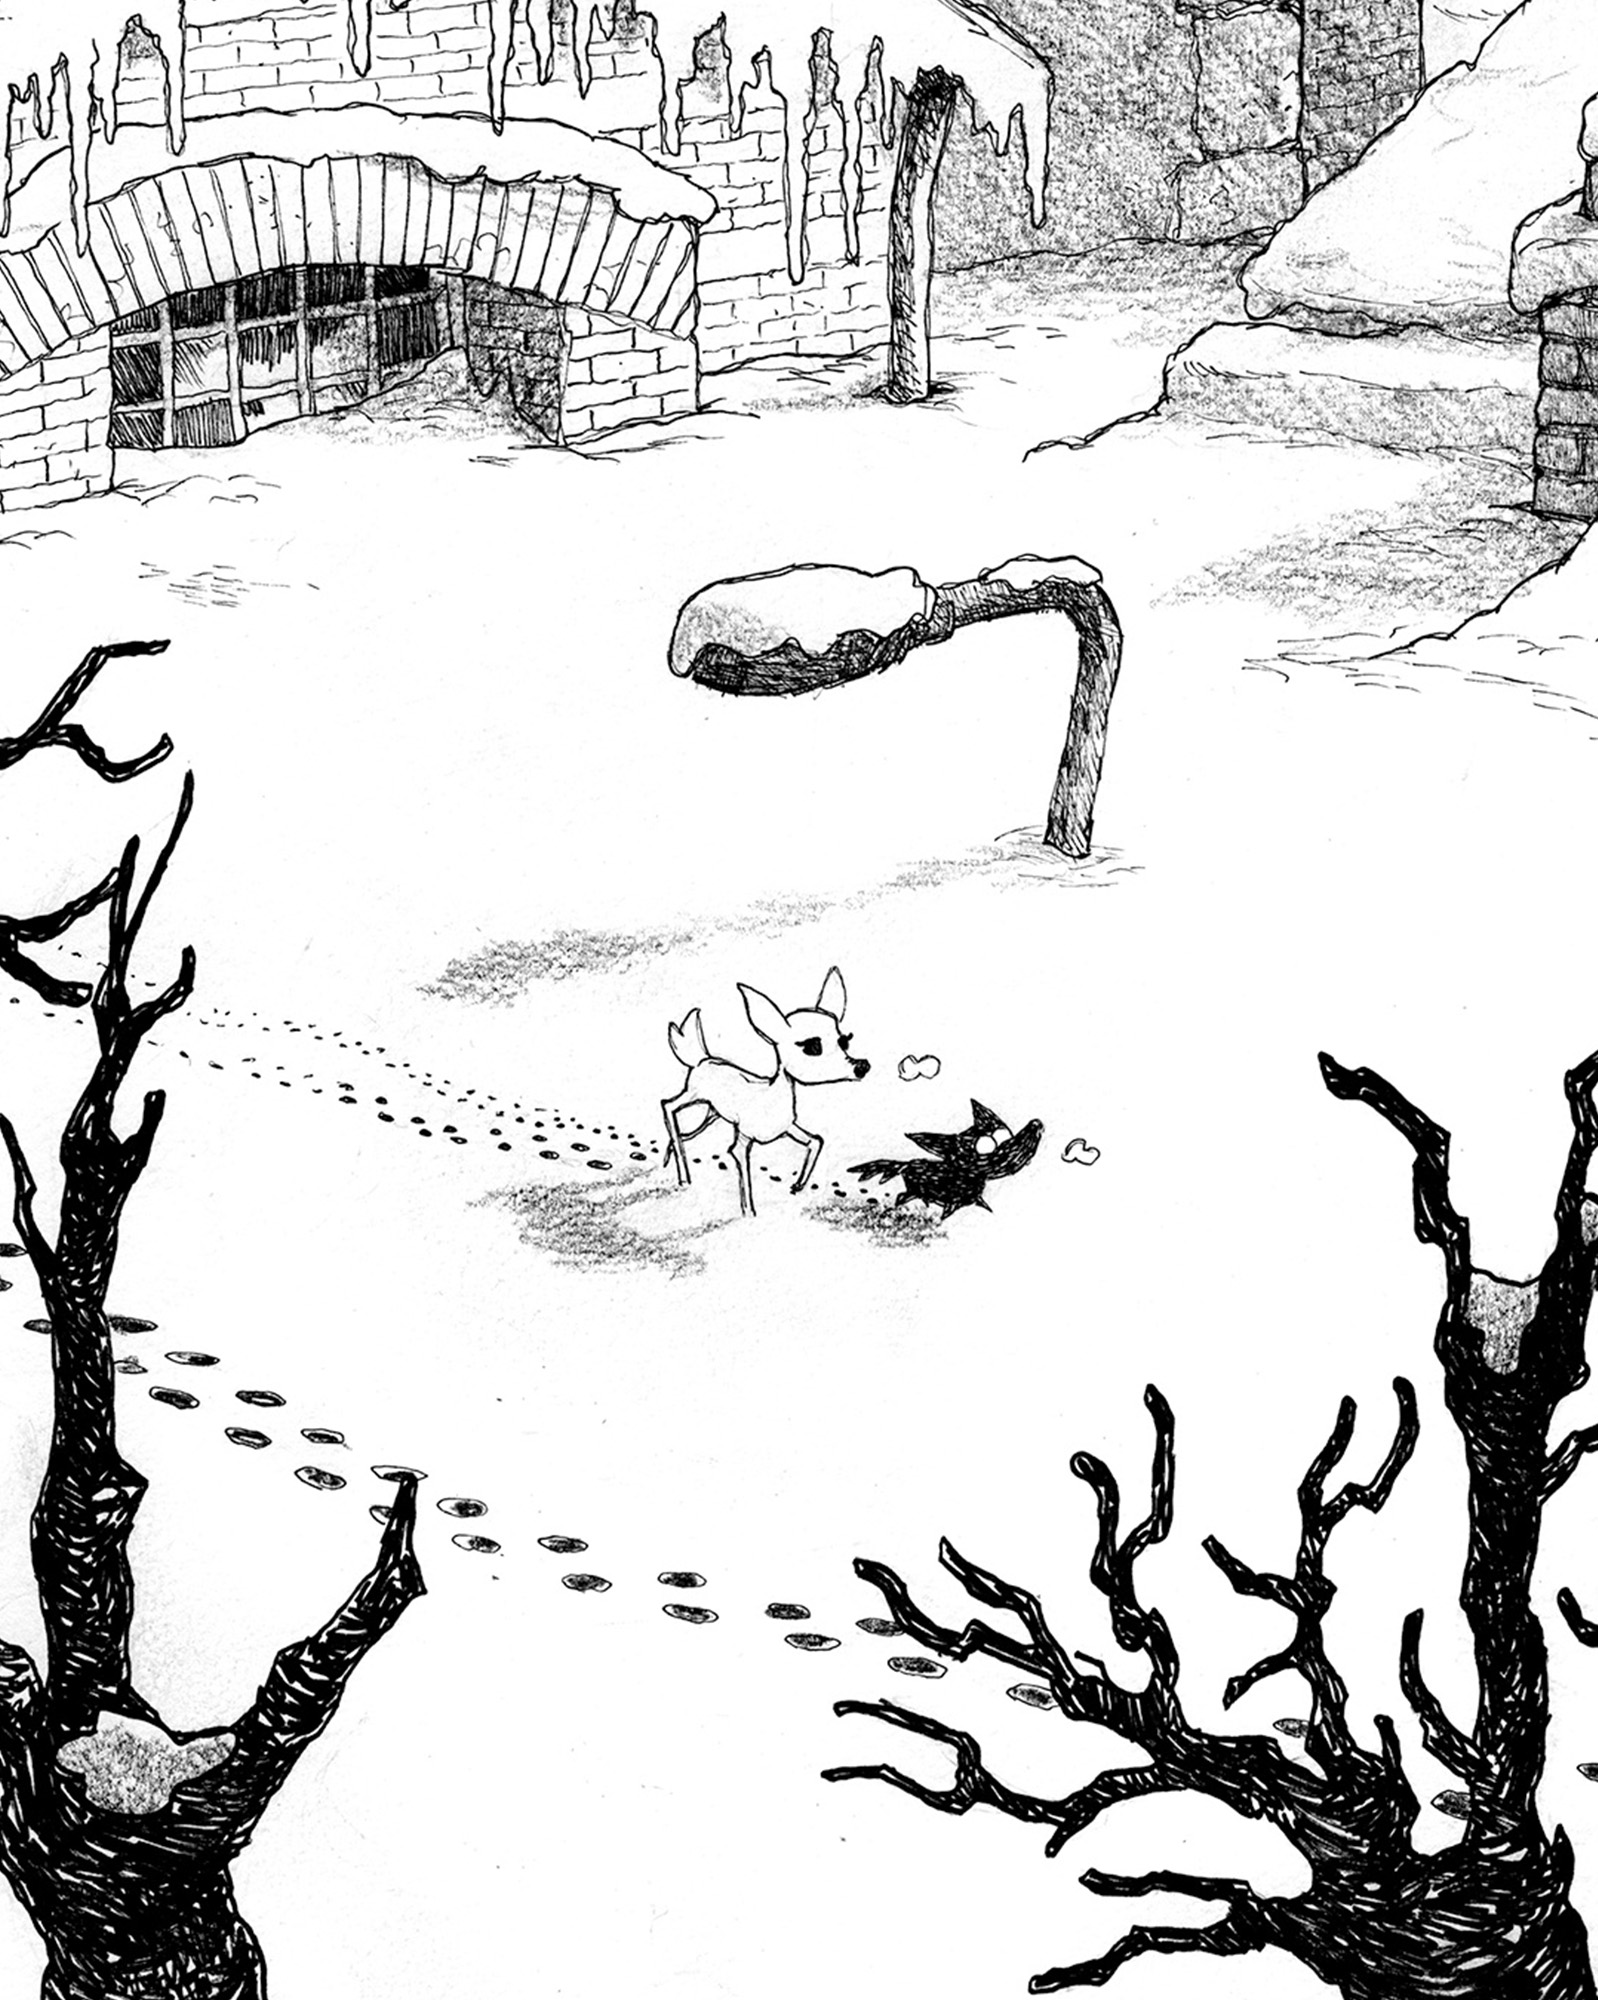 Illustration conceptuelle du jeu Blanc en noir et blanc. Le faon et le louveteau marchent seuls dans un paysage urbain, enneigé après une violente tempête.